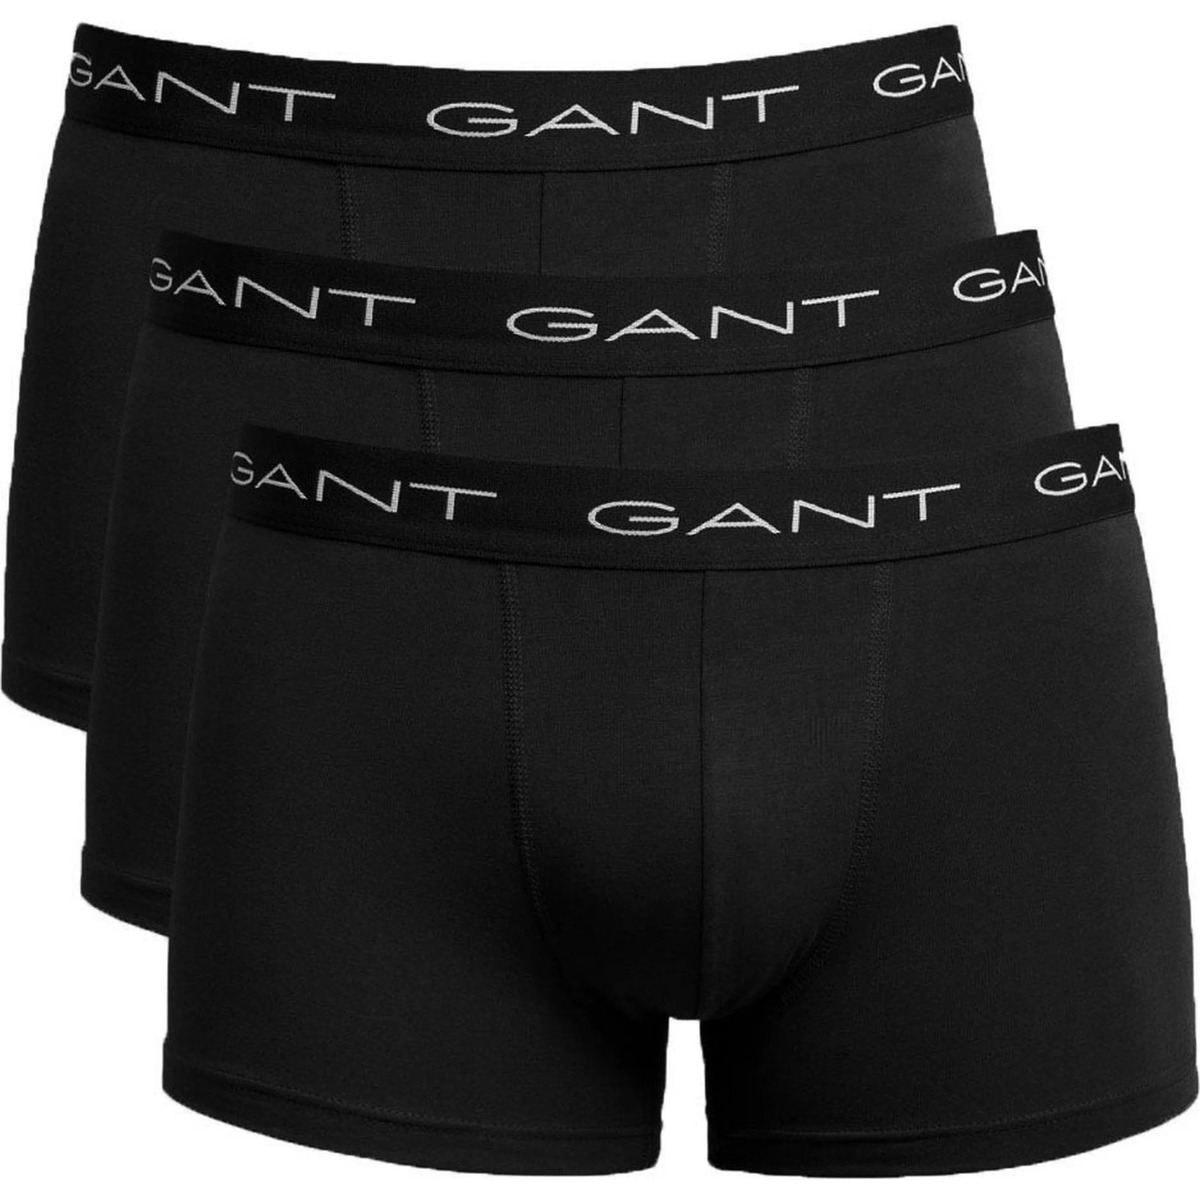 Gant Noir Boxers Lot de 3 Noir p93W8sPG